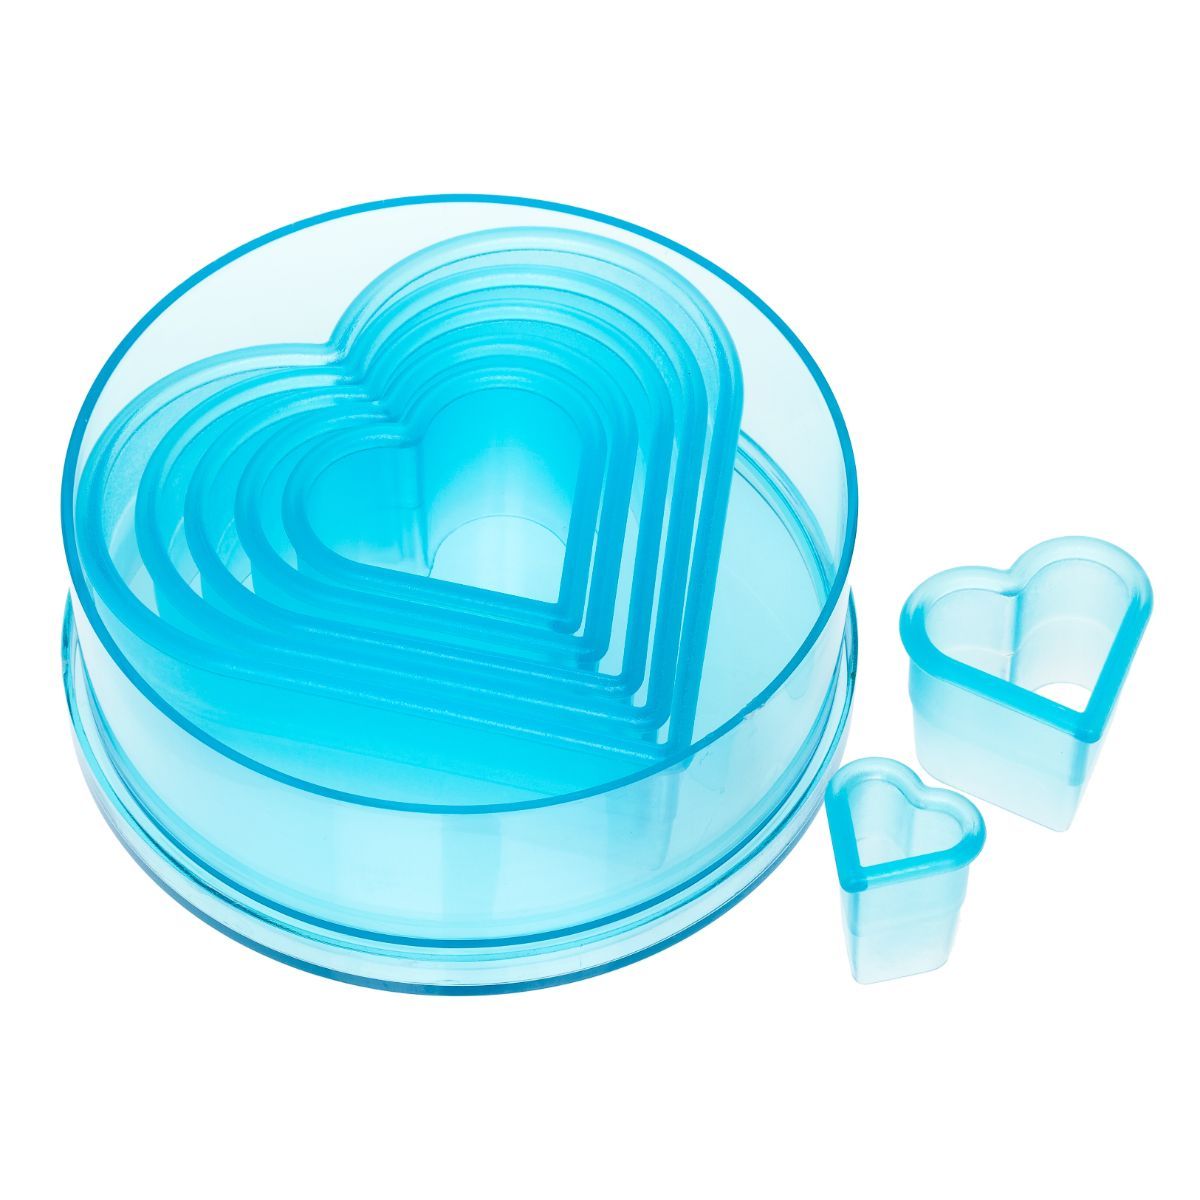 Ateco 5751 7-Piece Plastic Plain Heart Cutter Set